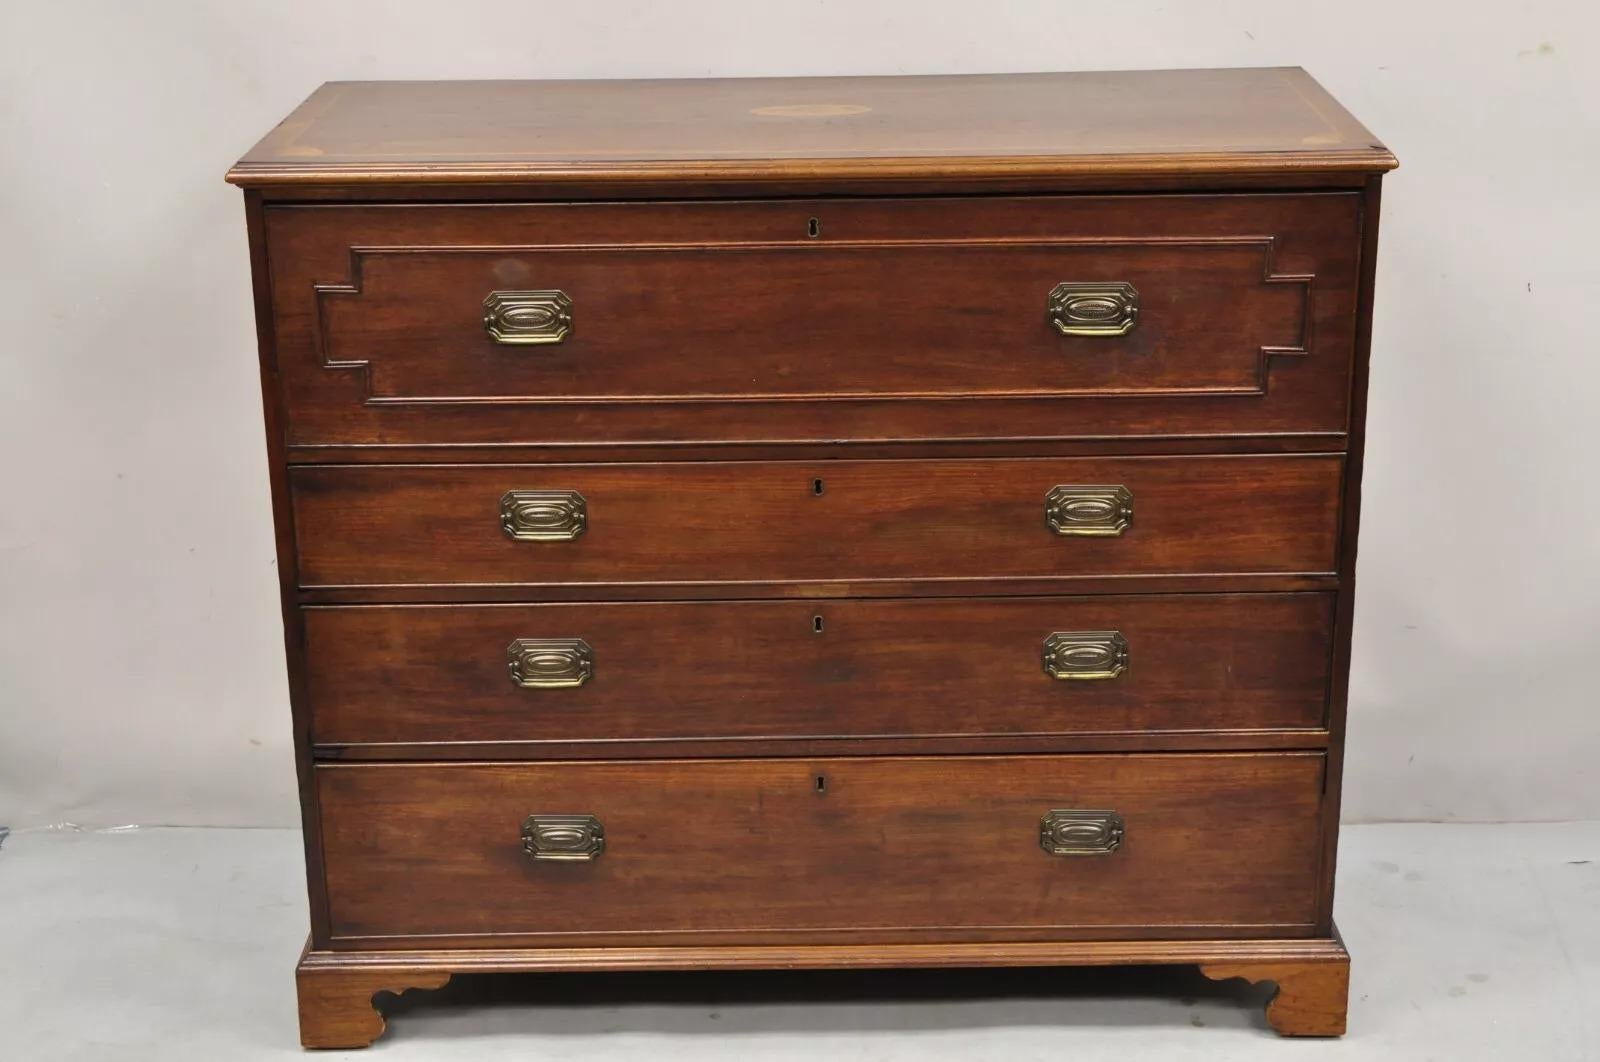 Antique English Edwardian Mahogany Chest of Drawers Secretary Desk Bureau For Sale 11